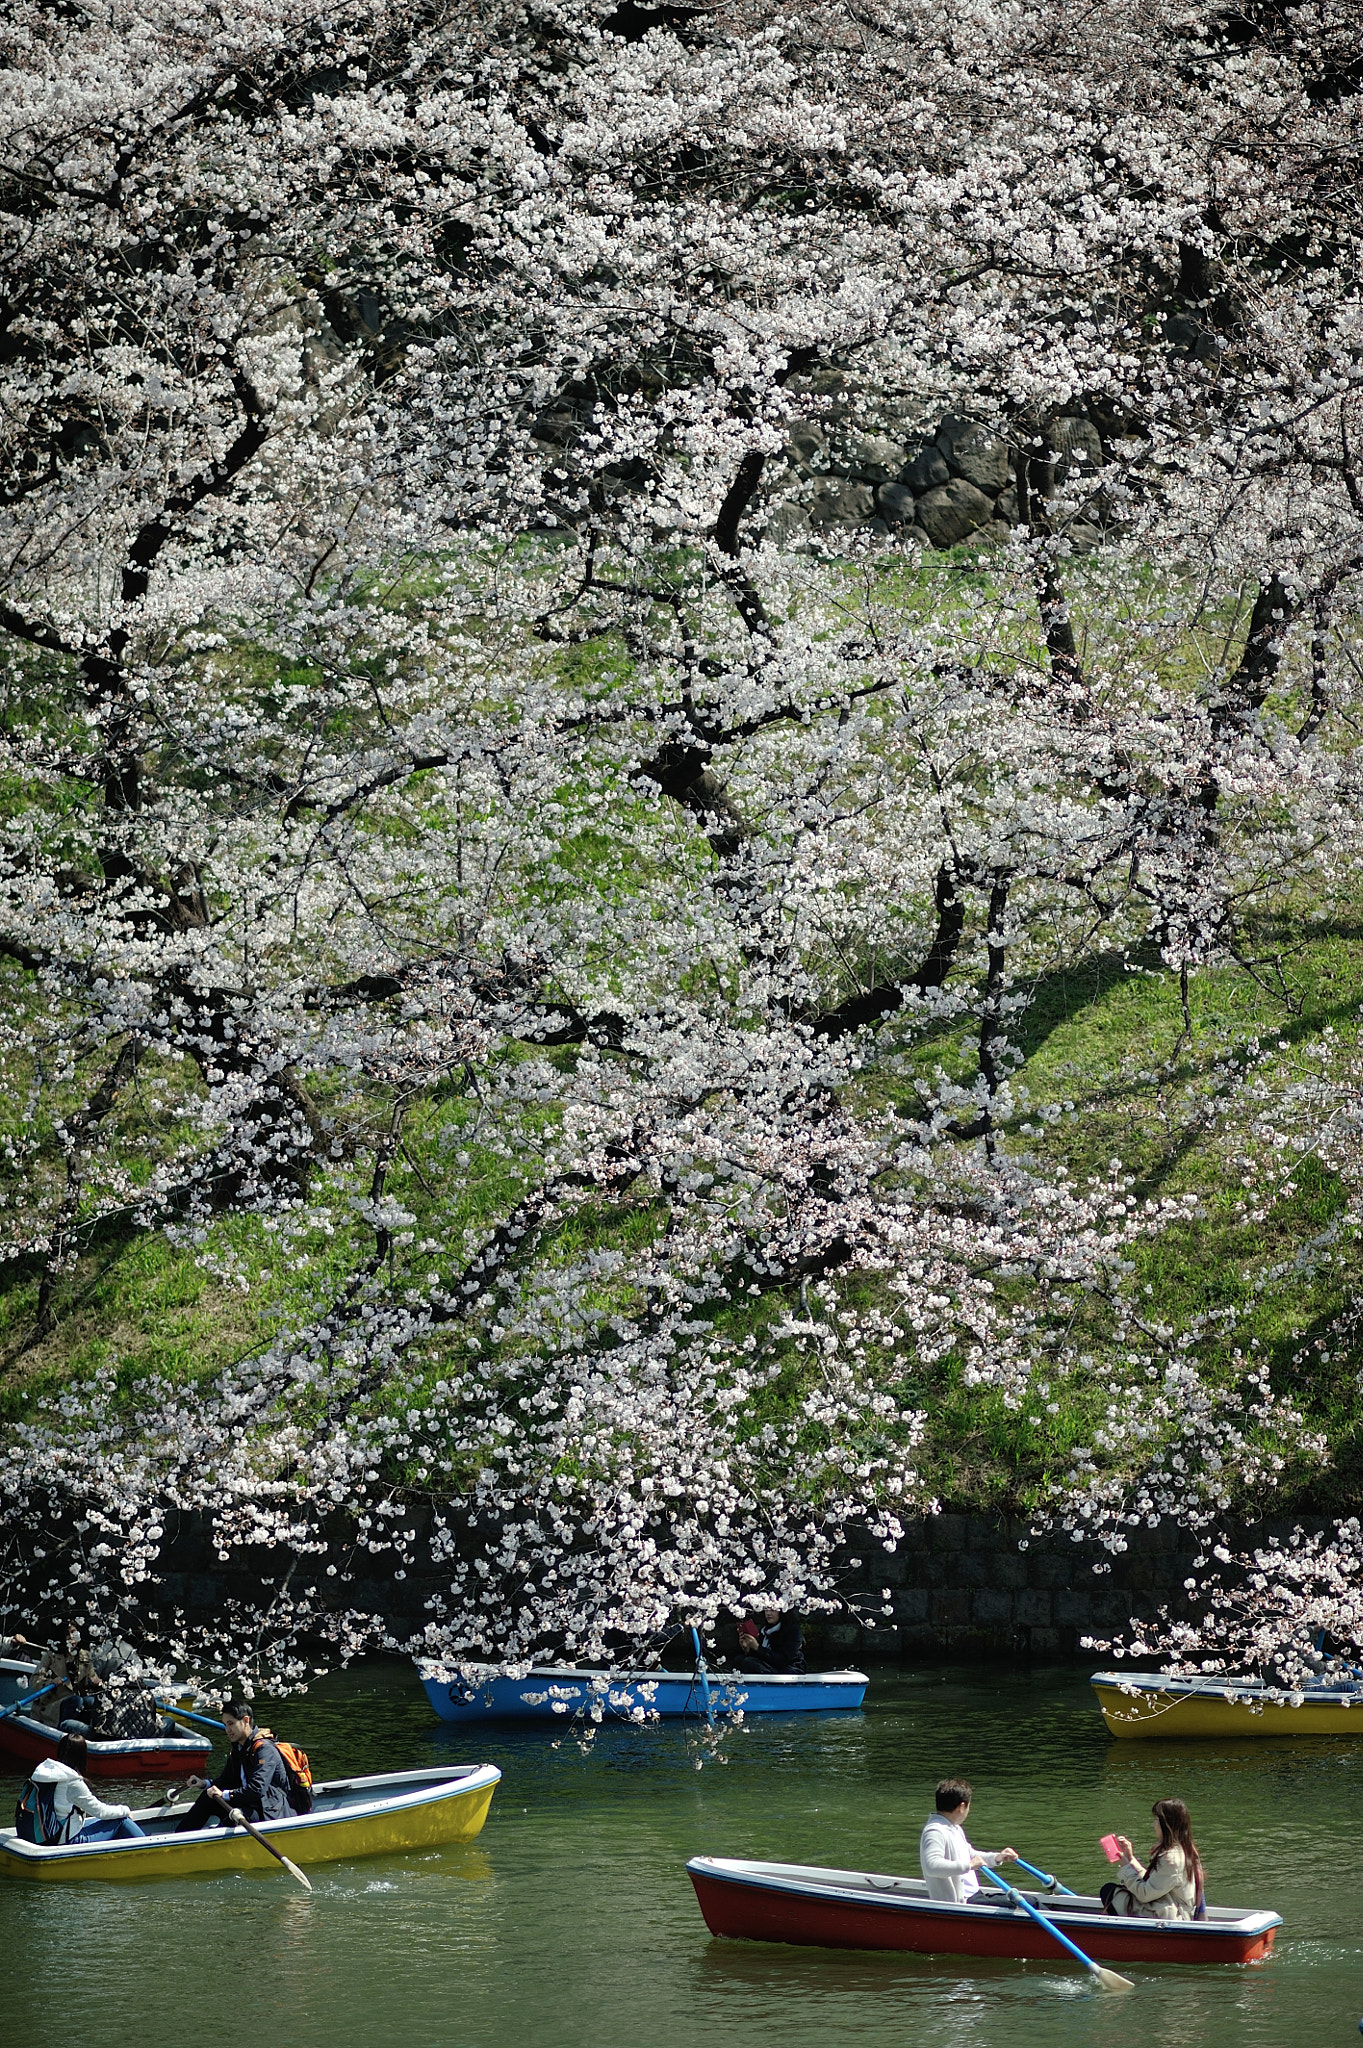 Nikon D700 + AF DC-Nikkor 135mm f/2D sample photo. Spring for tokyoites photography